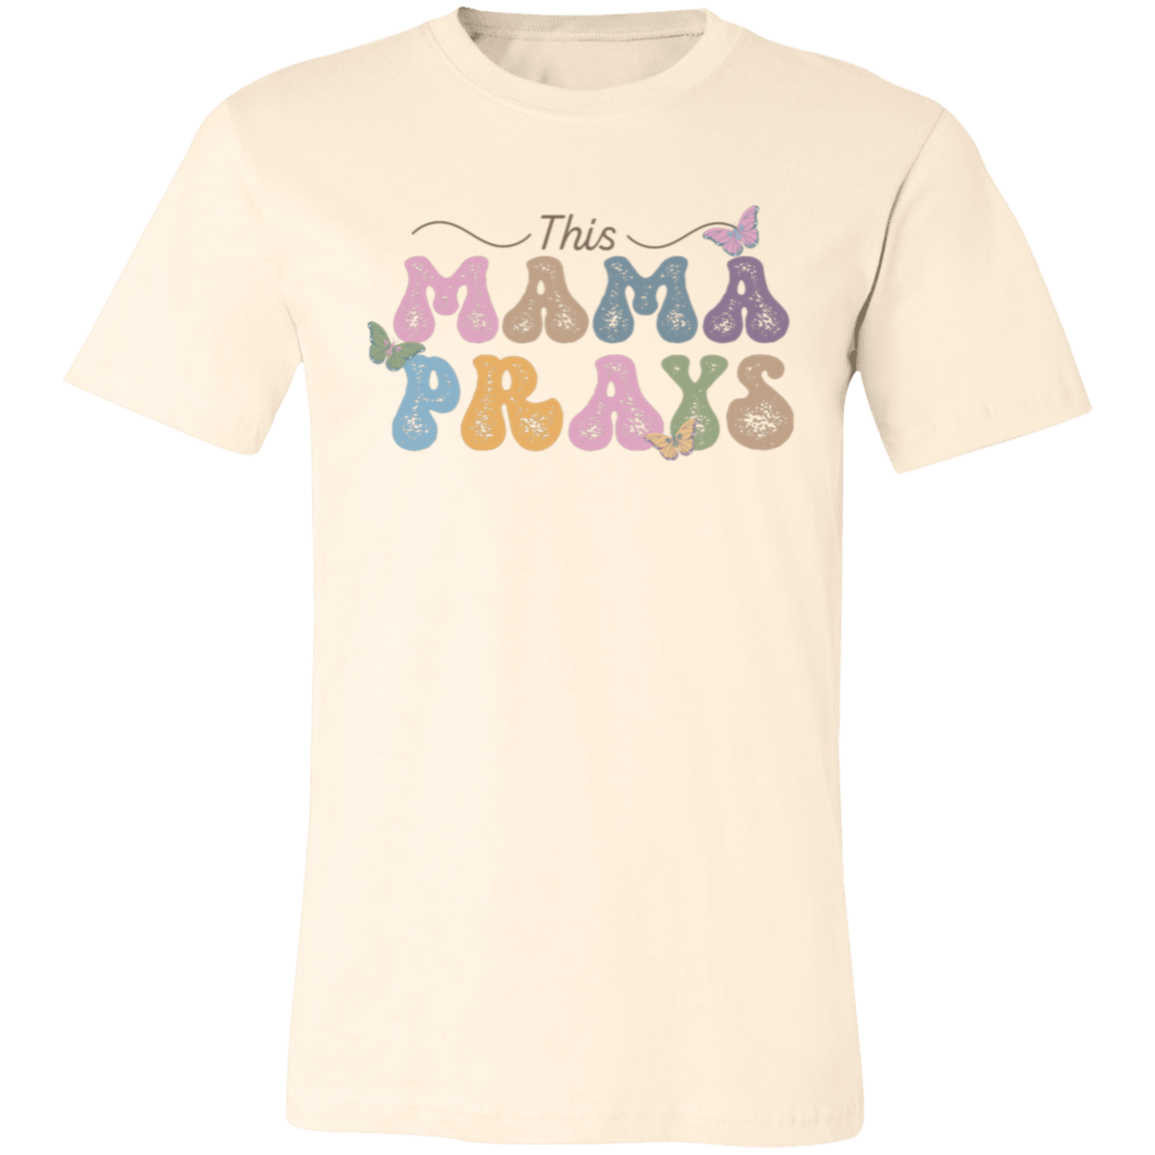 This Mama Prays - T-shirt